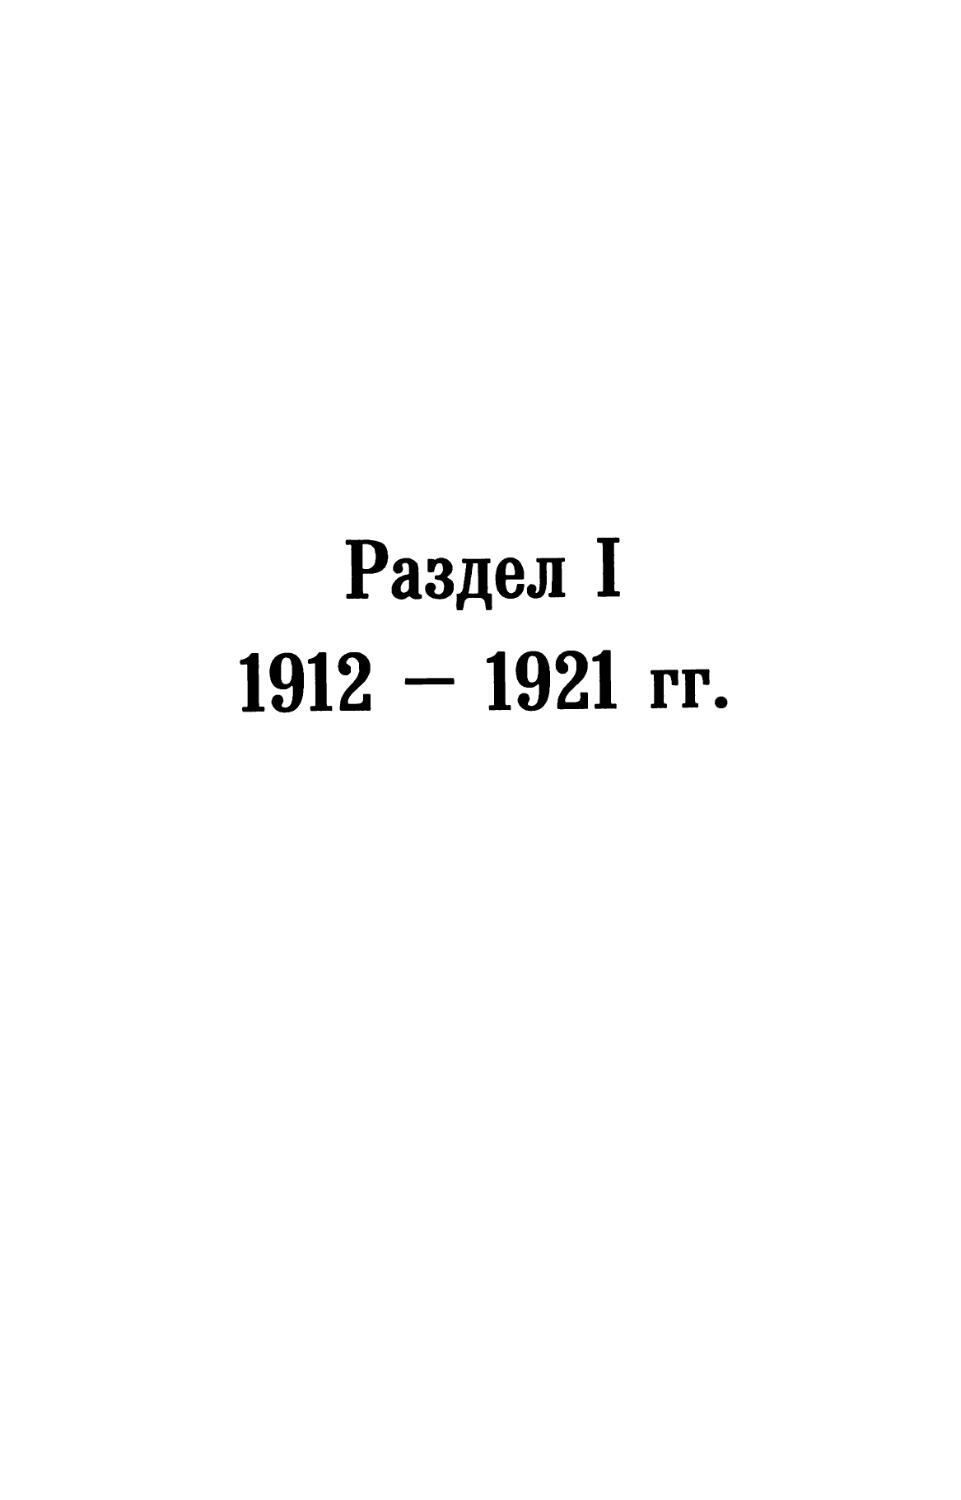 Раздел I. 1912 — 1921 гг.